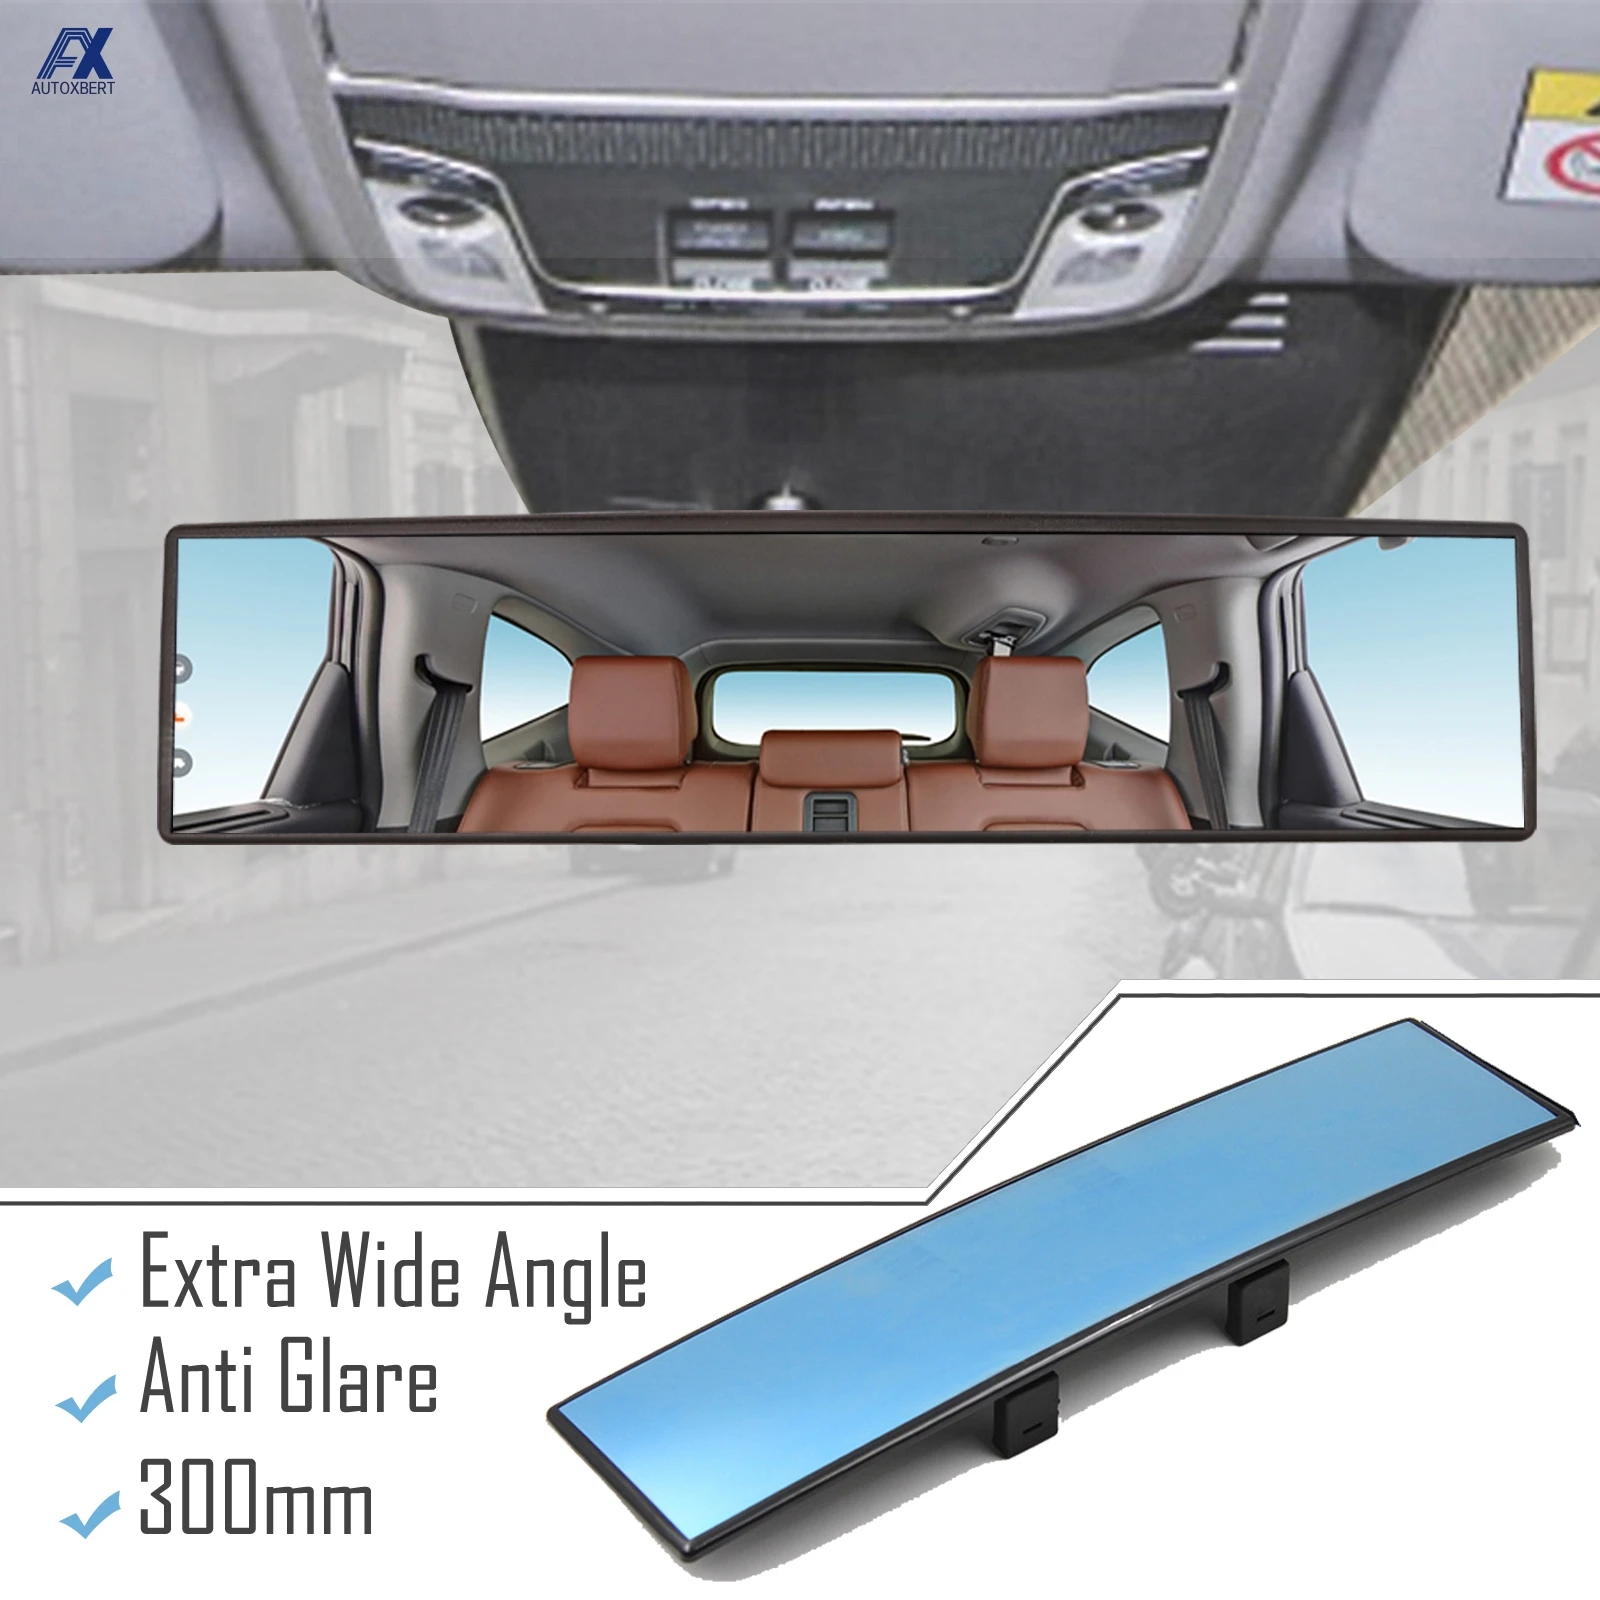 Kaufe TA Weitwinkel-Konvex-Auto-Auto -Toter-Winkel-Rund-Aufklebbare-Seitenansicht-Rückspiegel-Zubehör